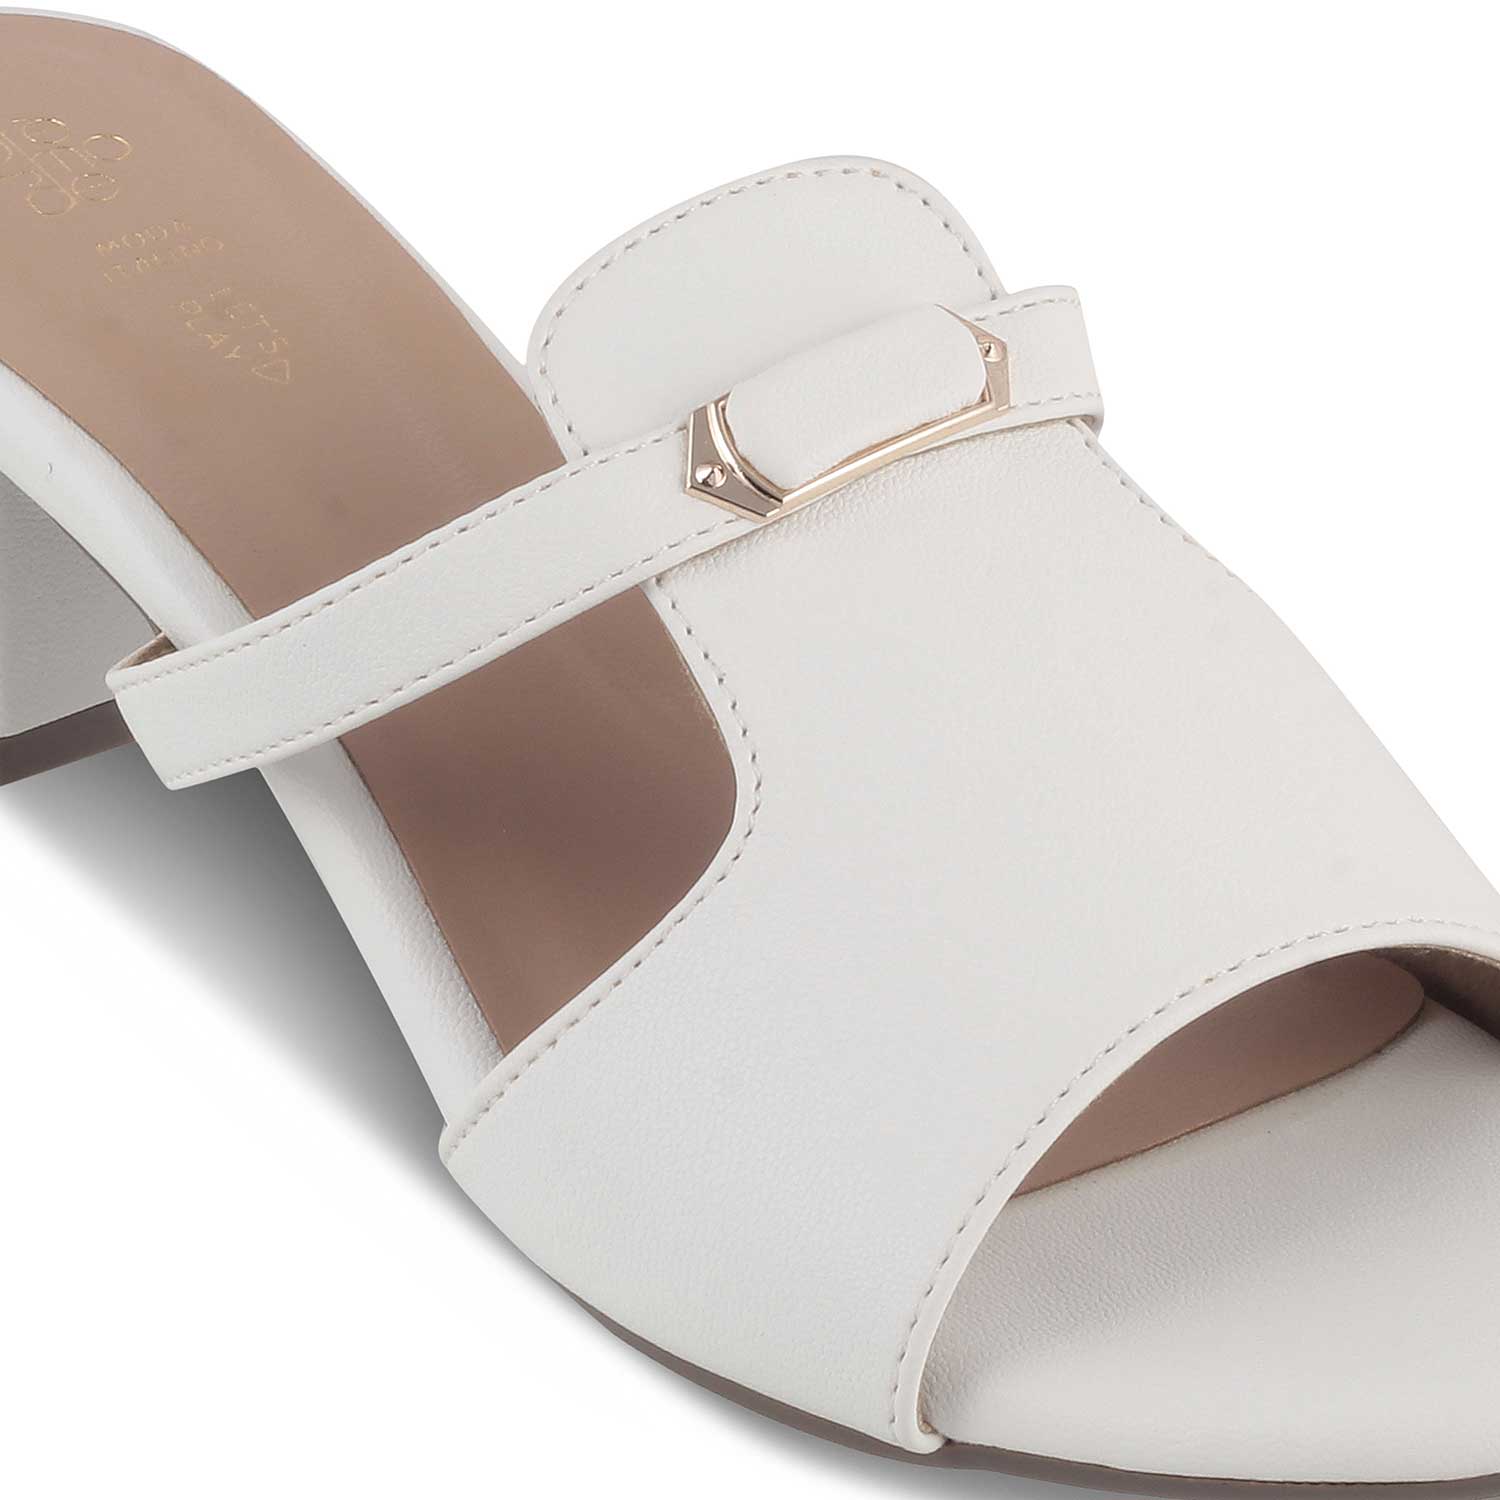 The Miso White Women's Dress Block Heel Sandals Tresmode